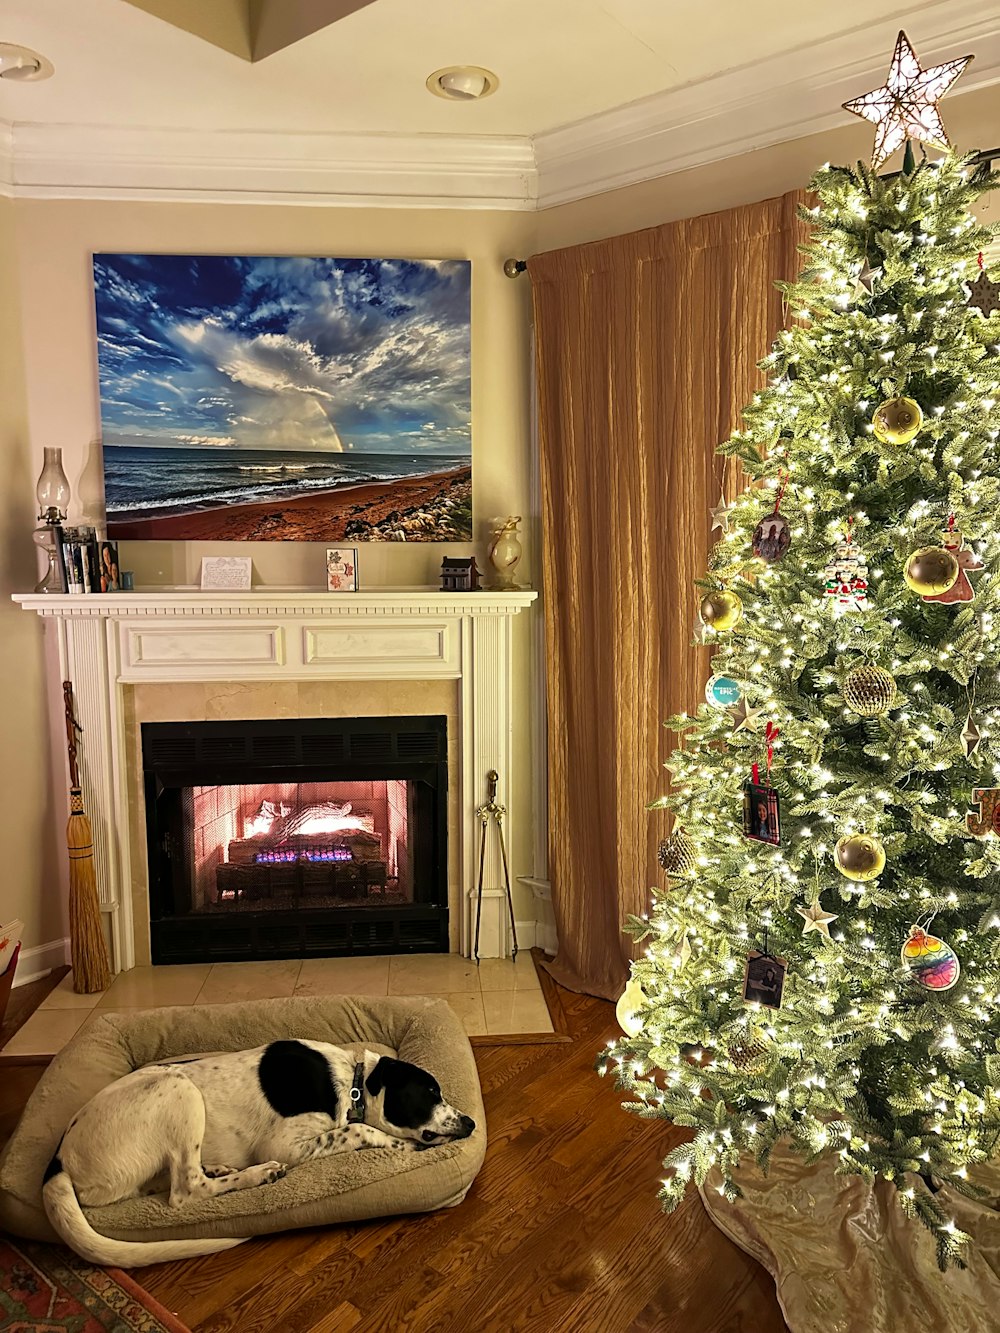 Un chien allongé sur un lit devant un arbre de Noël